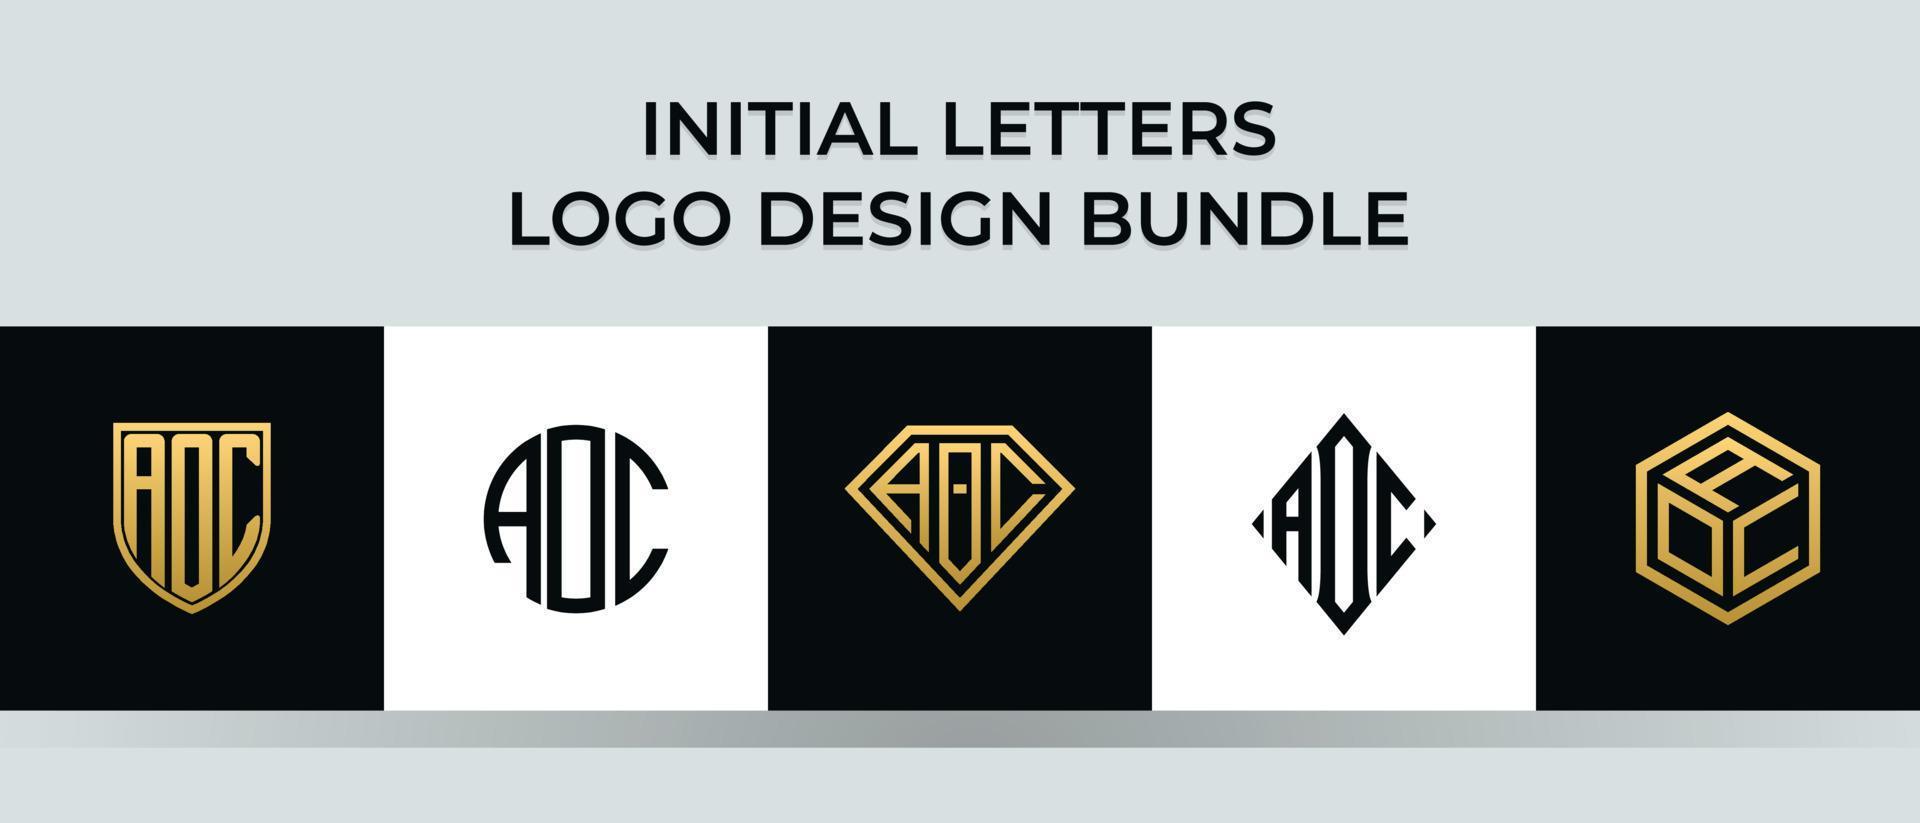 Initial letters AOC logo designs Bundle vector